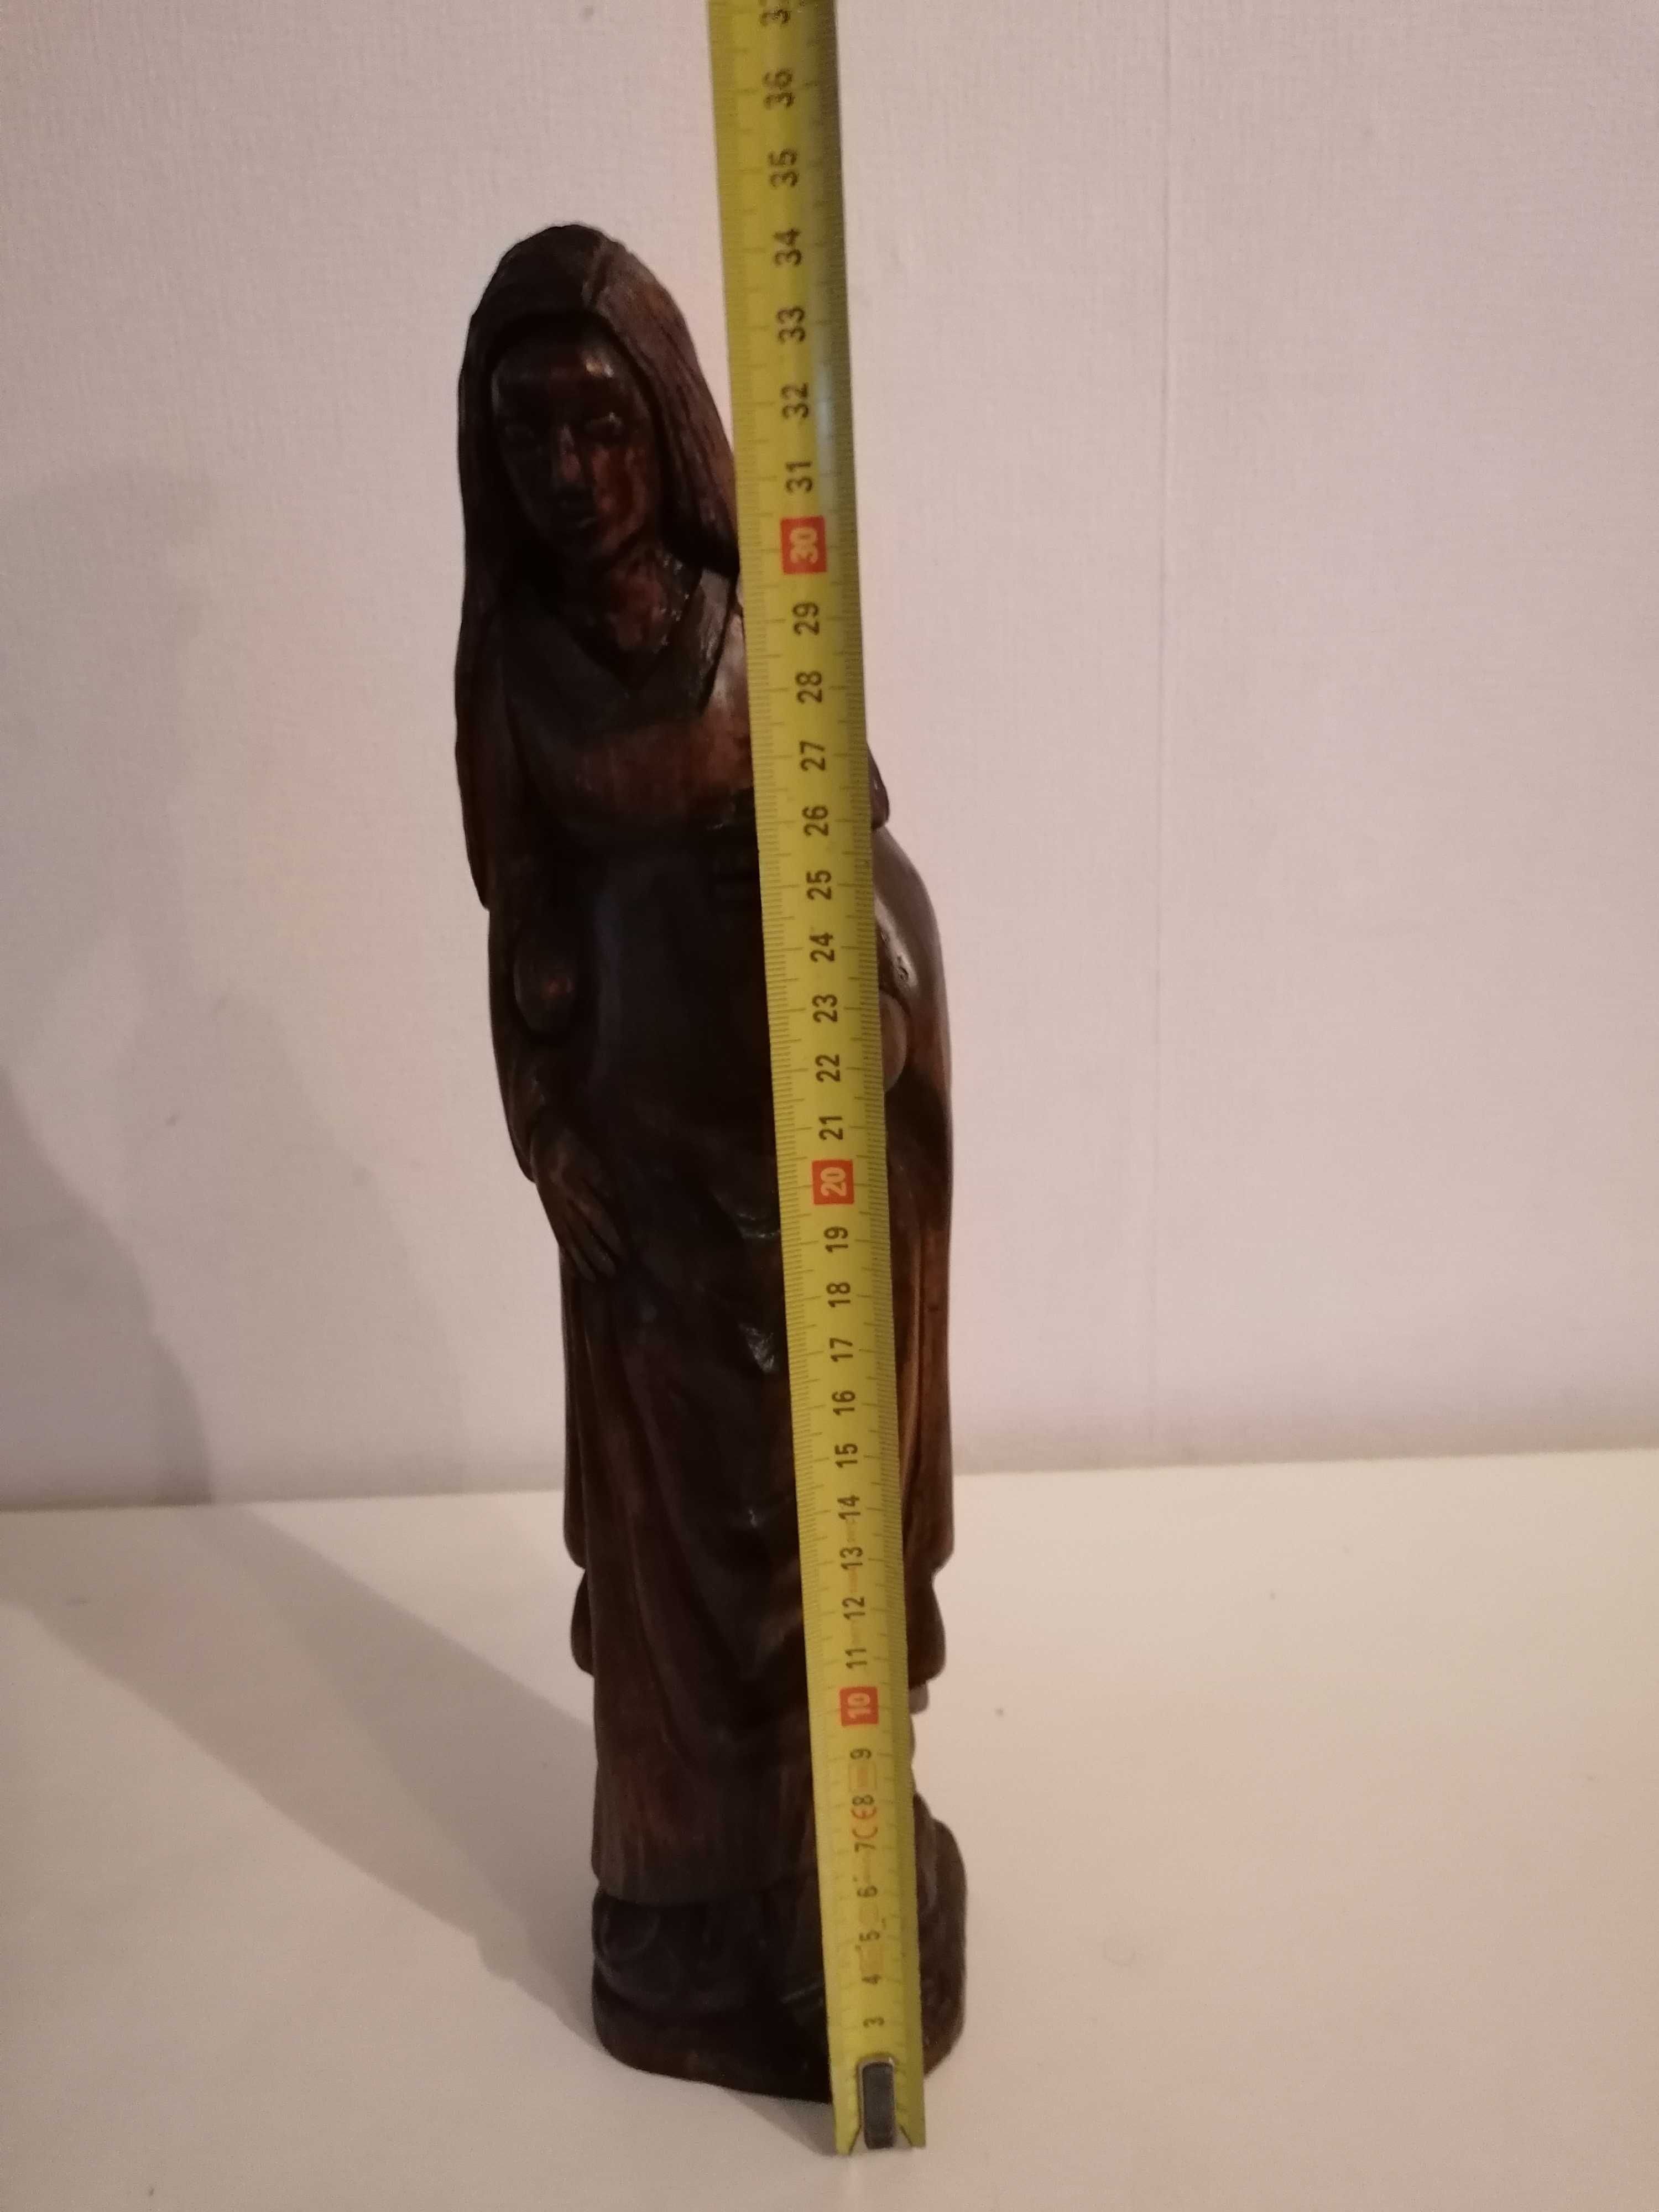 Stara oryginalna ręcznie wykonana drewniana figurka Matki Boskiej